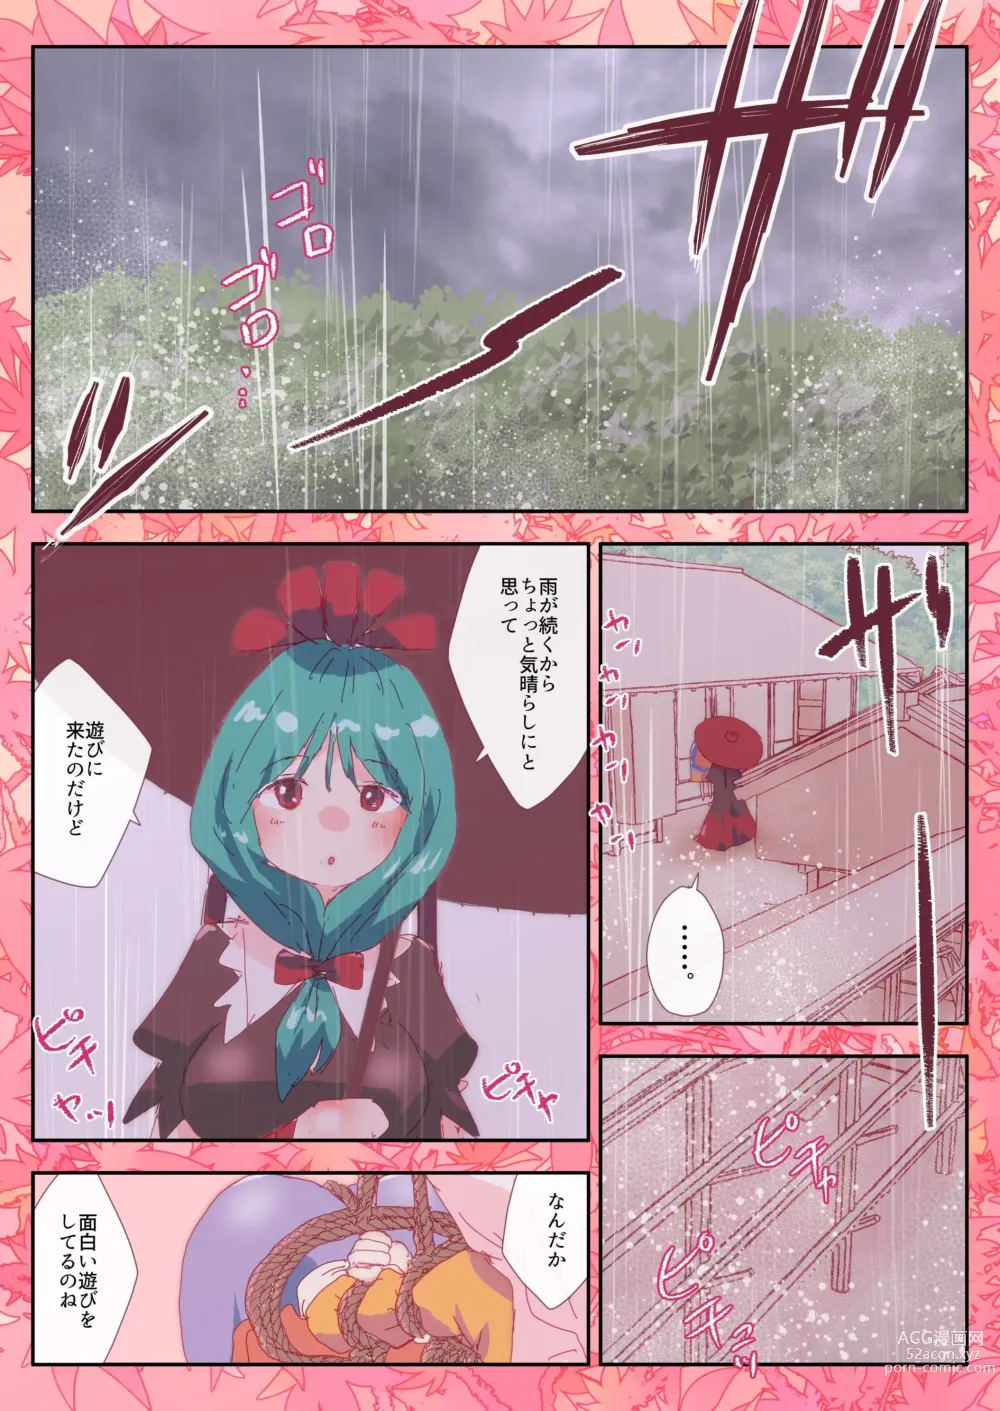 Page 1 of doujinshi Teruteru Minoriko.